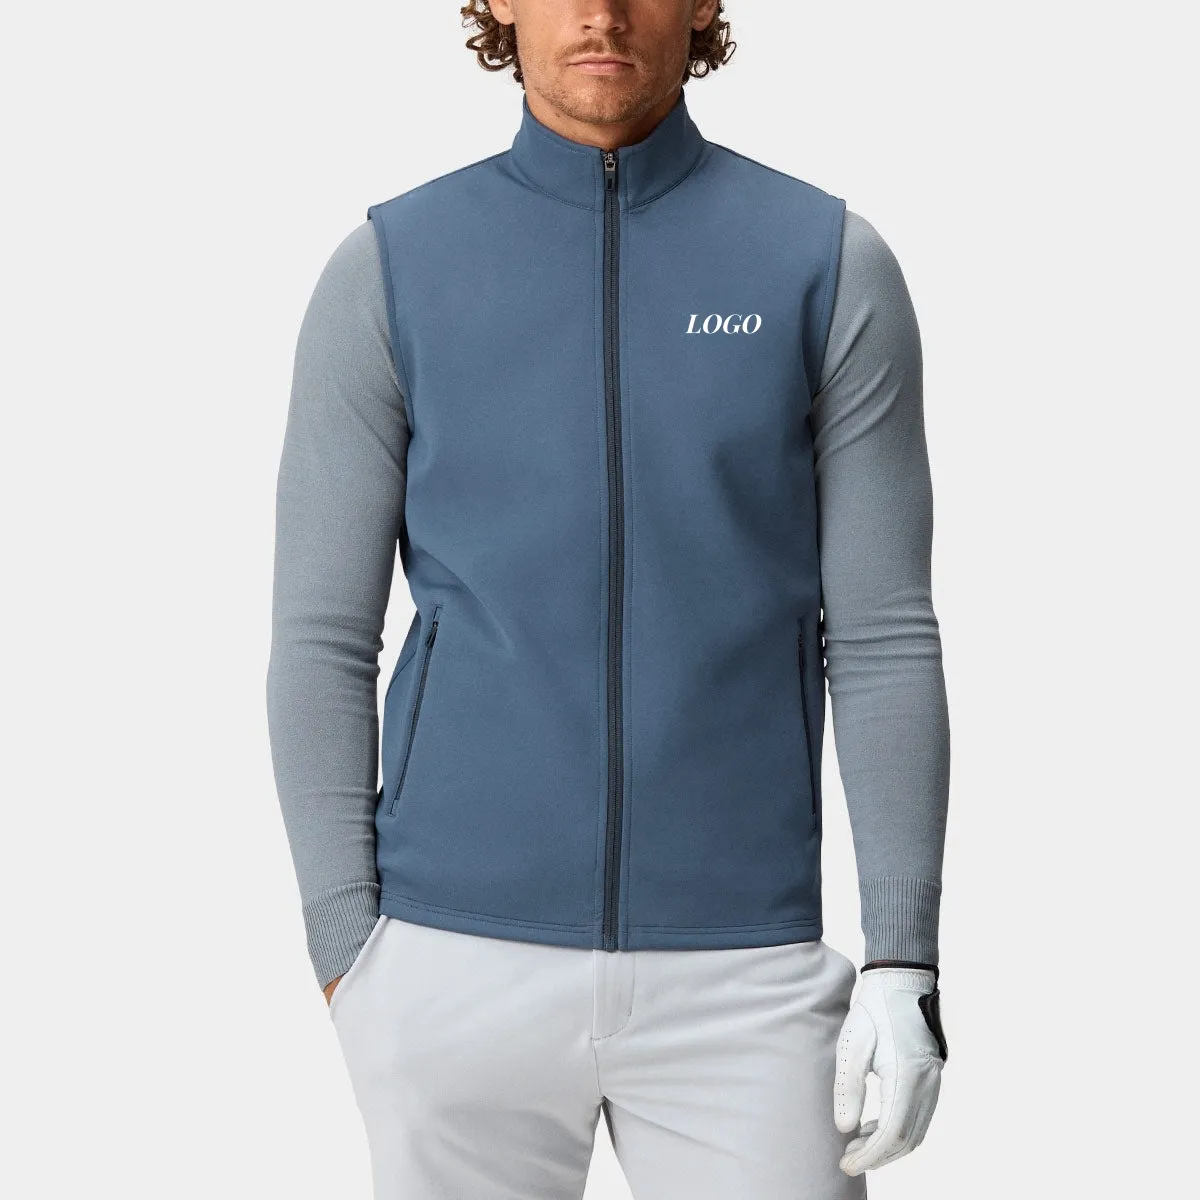 Nuovo design invernale personalizzato elastan patchwork full zip leggero a prova di vento senza maniche sport utility golf gilet da uomo